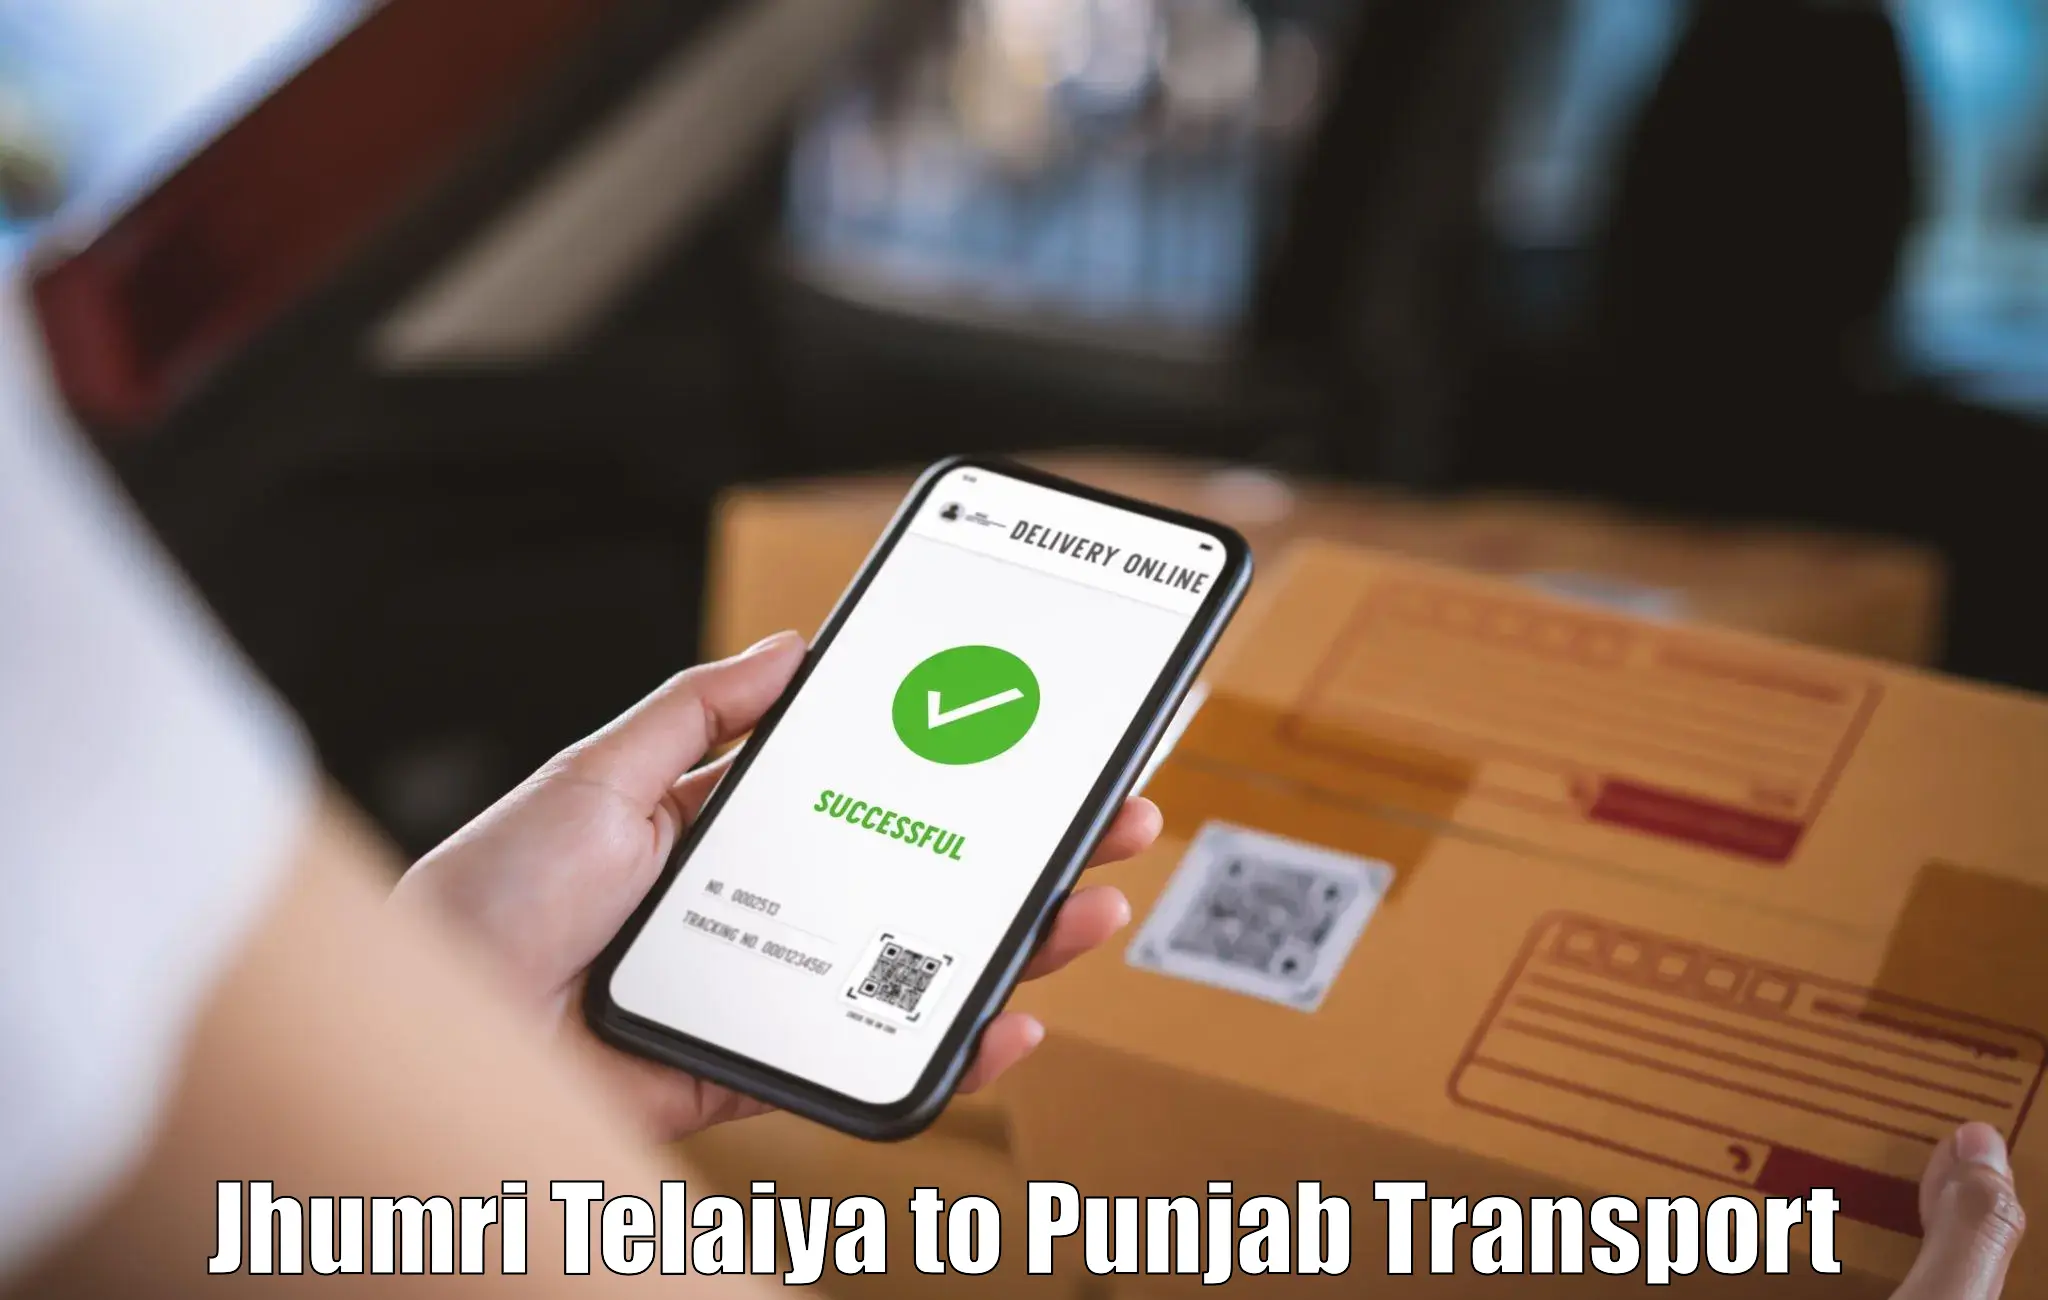 Vehicle transport services Jhumri Telaiya to Jalalabad